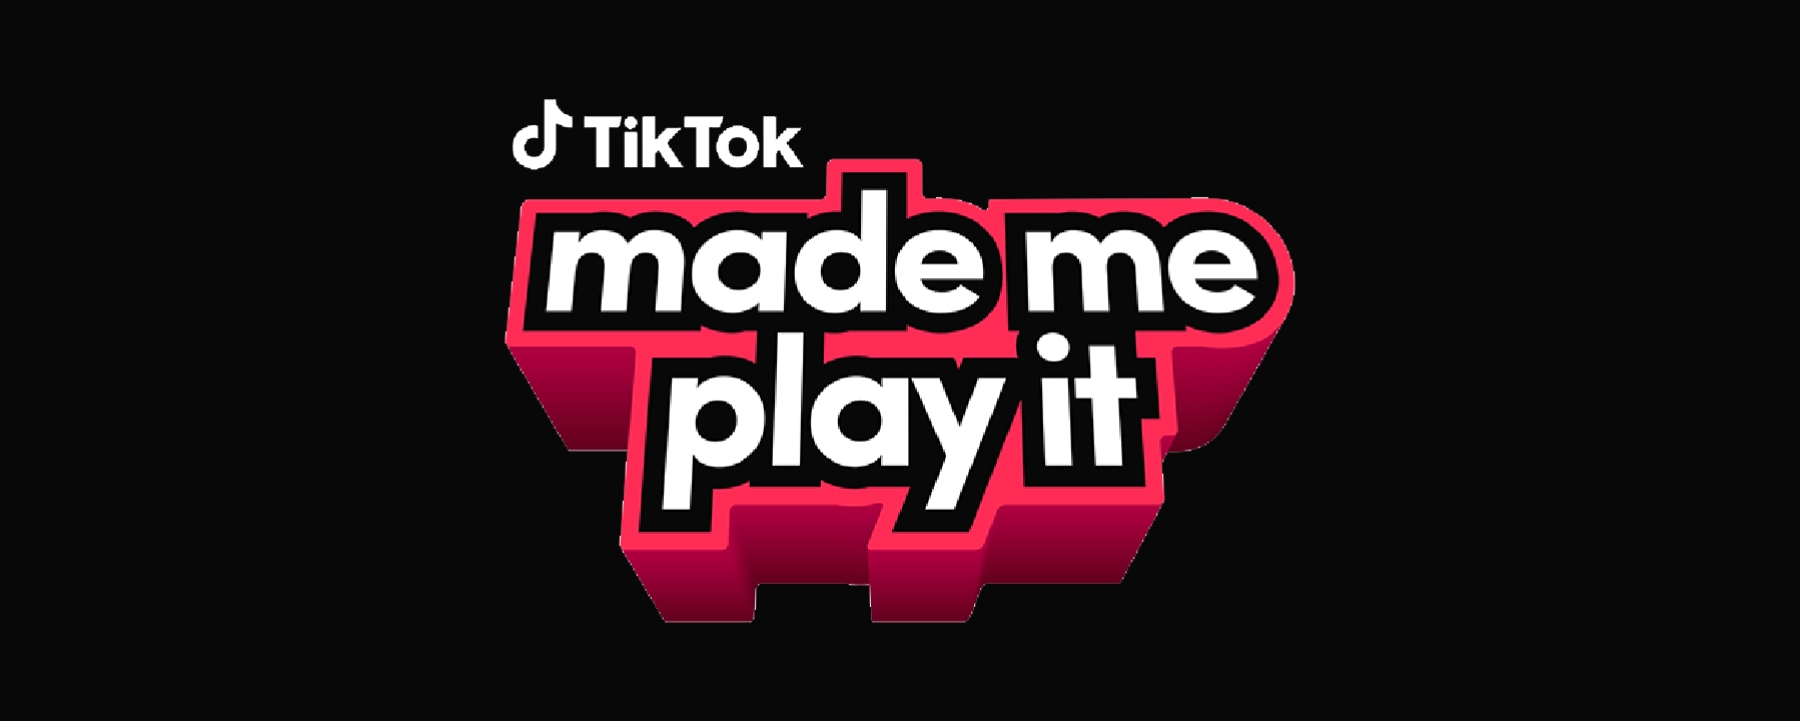 TikTok - made me play it 